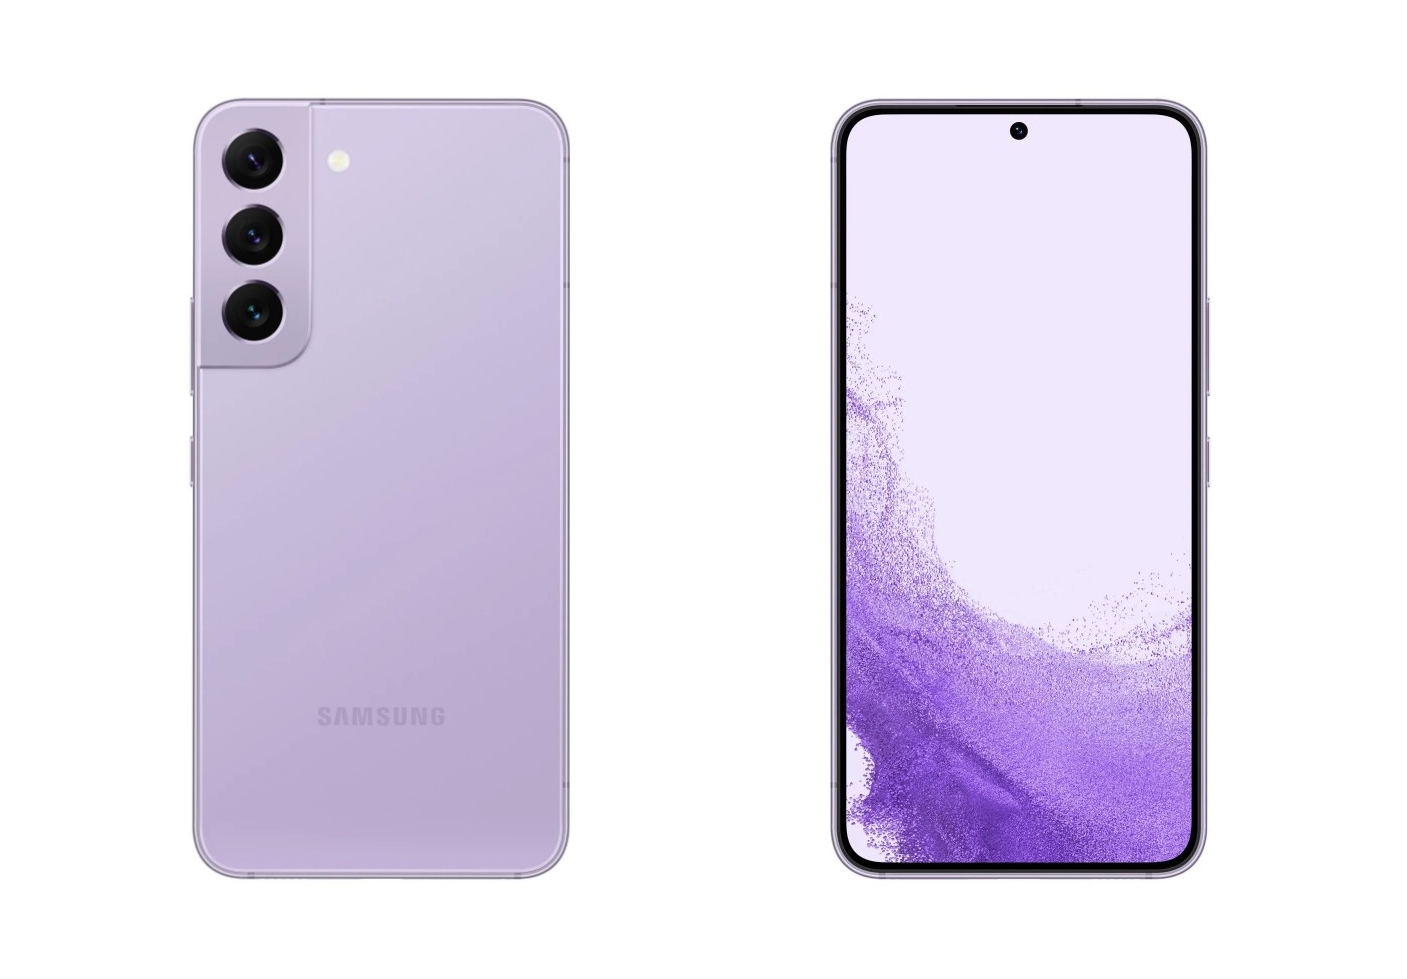 Samsung Galaxy S22 in the new Bora Purple color